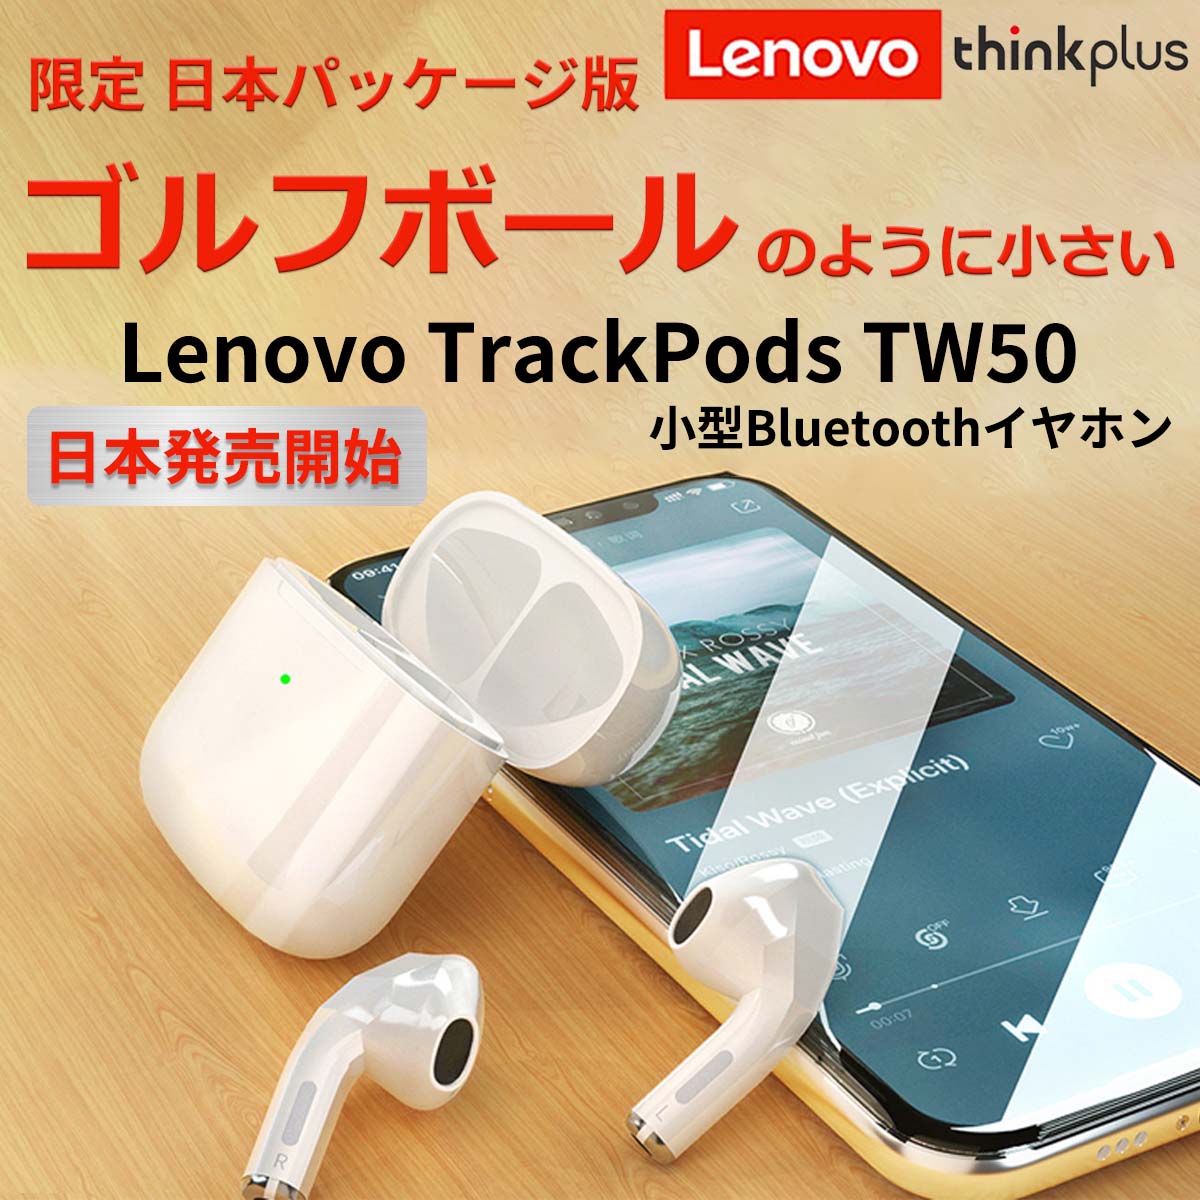 【日本発売開始！】Lenovo TrackPods 小型 Bluetooth ワイヤレス イヤホン 限定 日本パッケージ版 iPhone Android IPX4 防水 Siri対応 マイク 送料無料692809